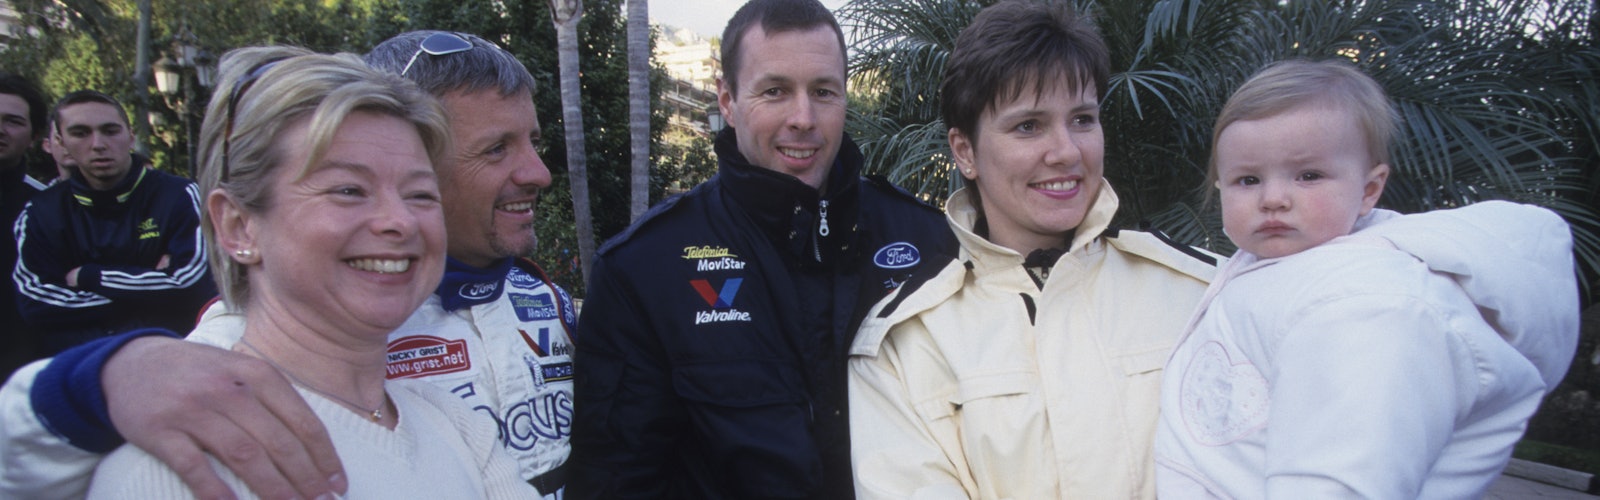 2000 Rallye Monte Carloworld wide copyright: McKlein